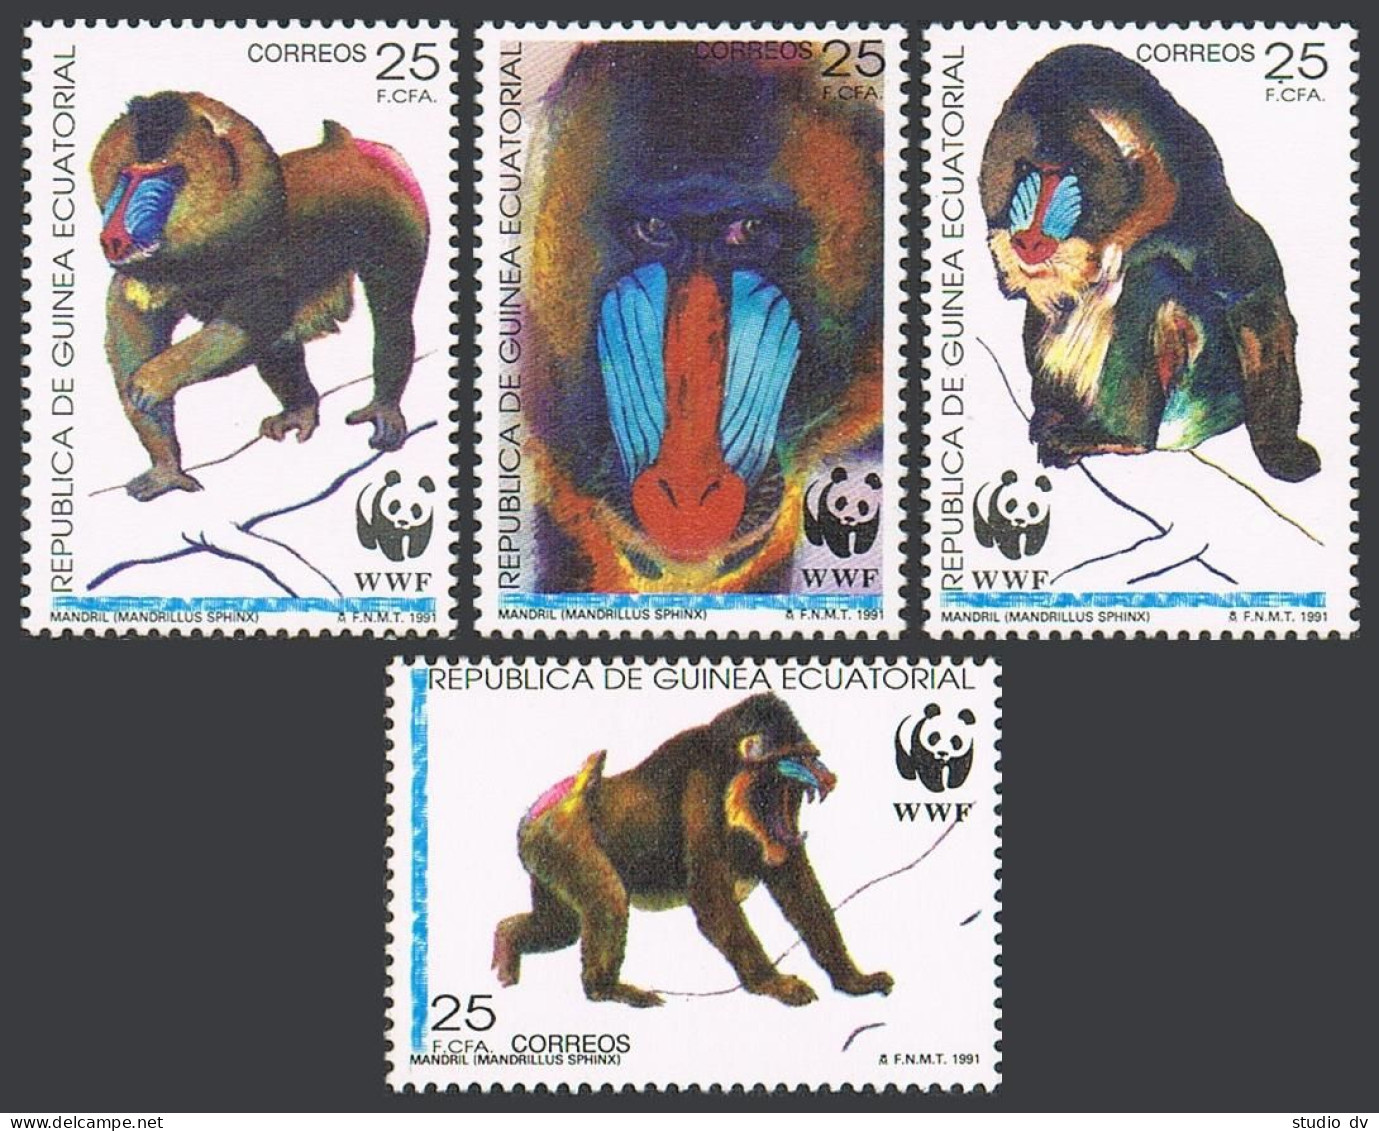 Equatorial Guinea 159-162, Hinged. Michel 1731-1734. WWF-1991. Madrillus Sphinx. - Guinea (1958-...)